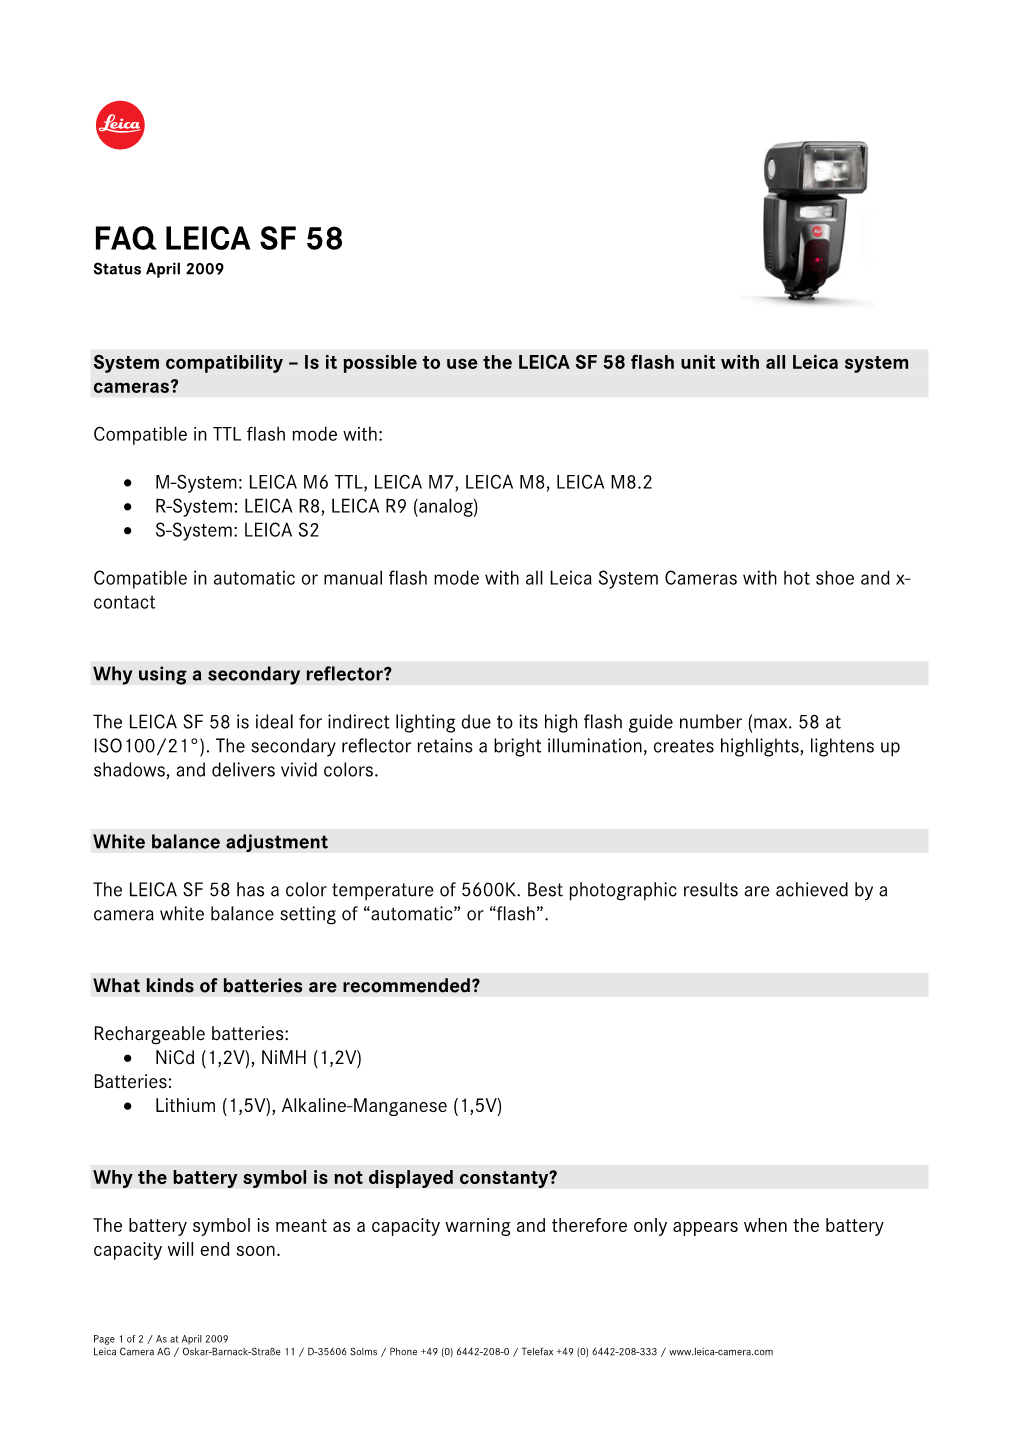 FAQ LEICA SF 58 April 2009 En